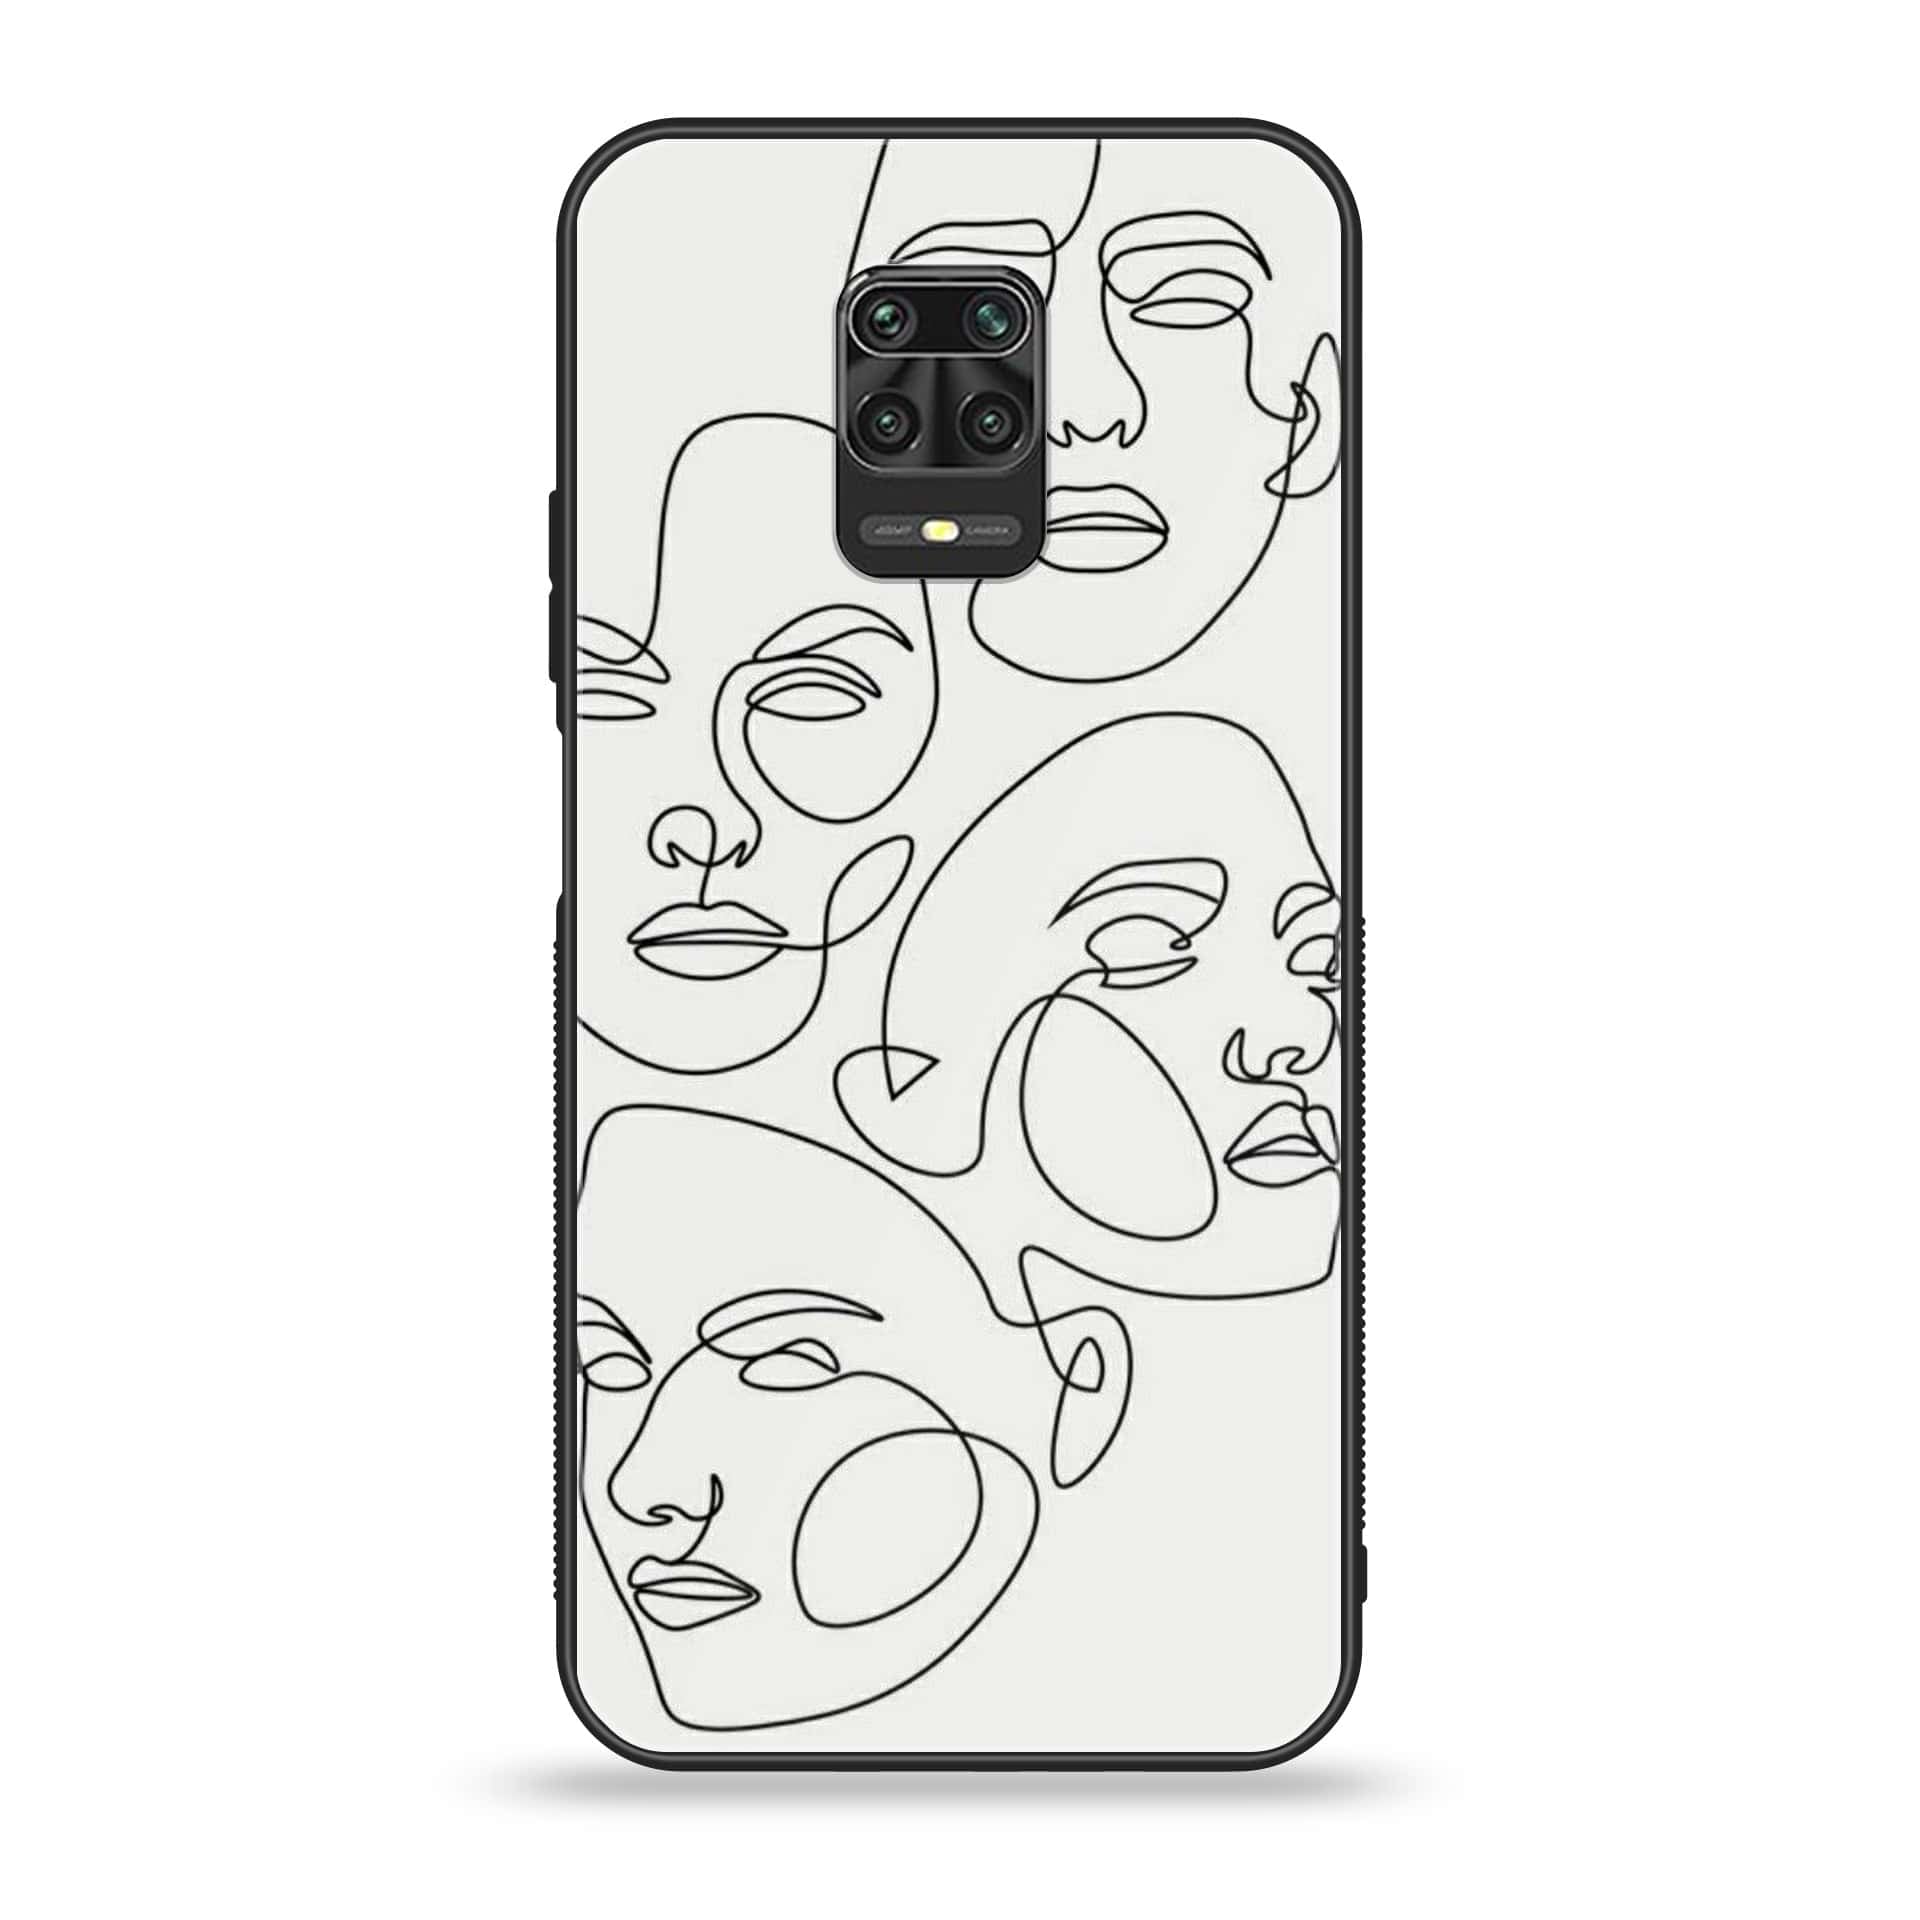 Xiaomi Redmi Note 9 Pro - Girls Line Art Series - Premium Printed Glass soft Bumper shock Proof Case